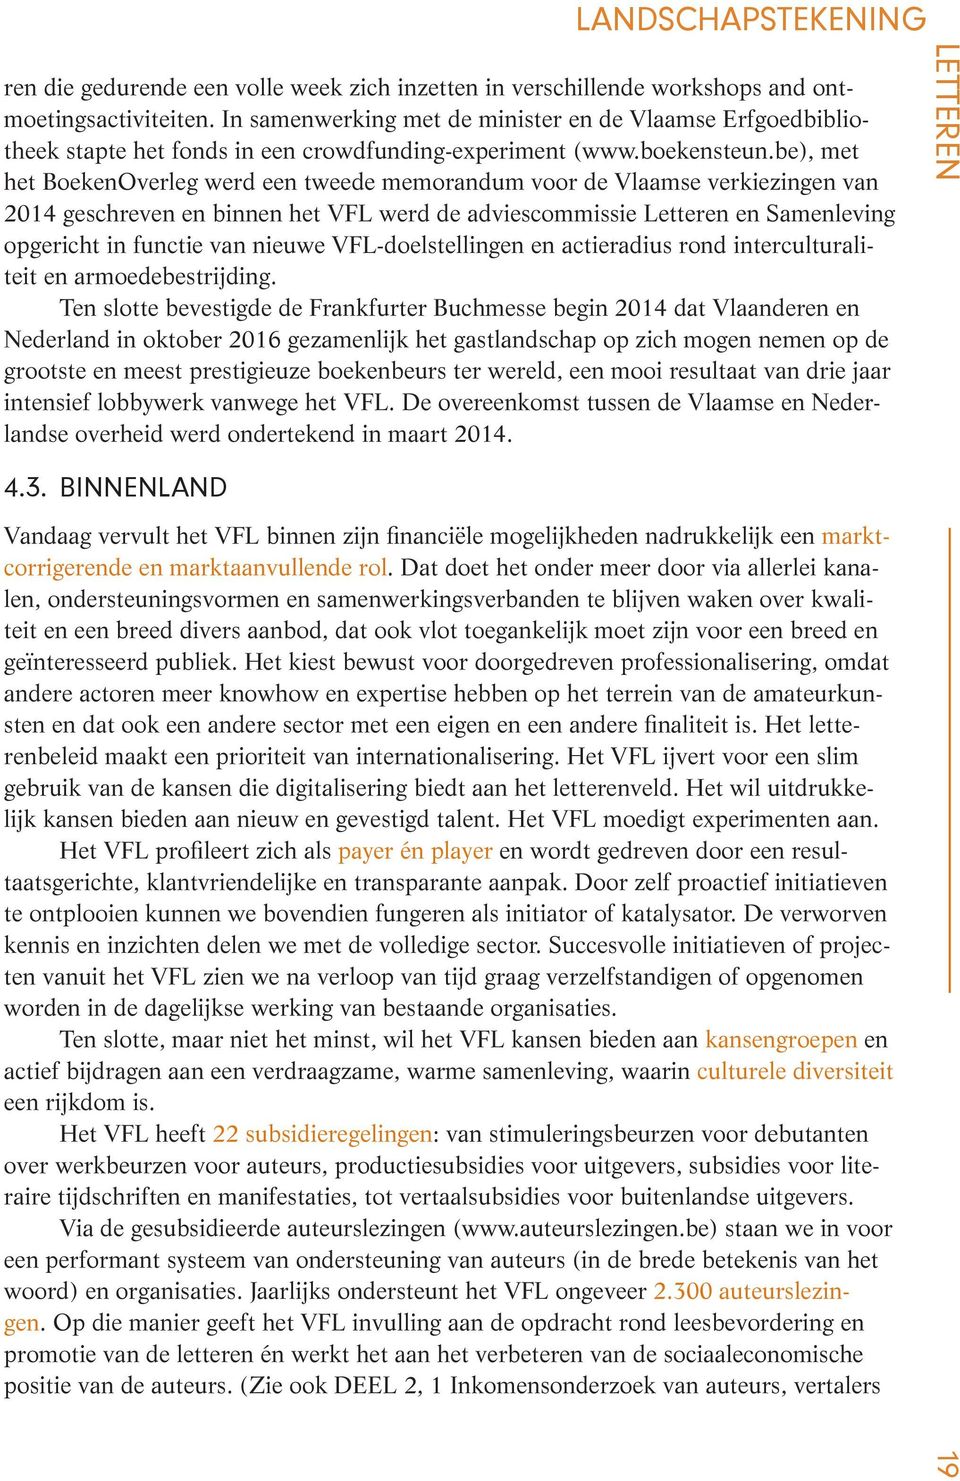 be), met het BoekenOverleg werd een tweede memorandum voor de Vlaamse verkiezingen van 2014 geschreven en binnen het VFL werd de adviescommissie Letteren en Samenleving opgericht in functie van